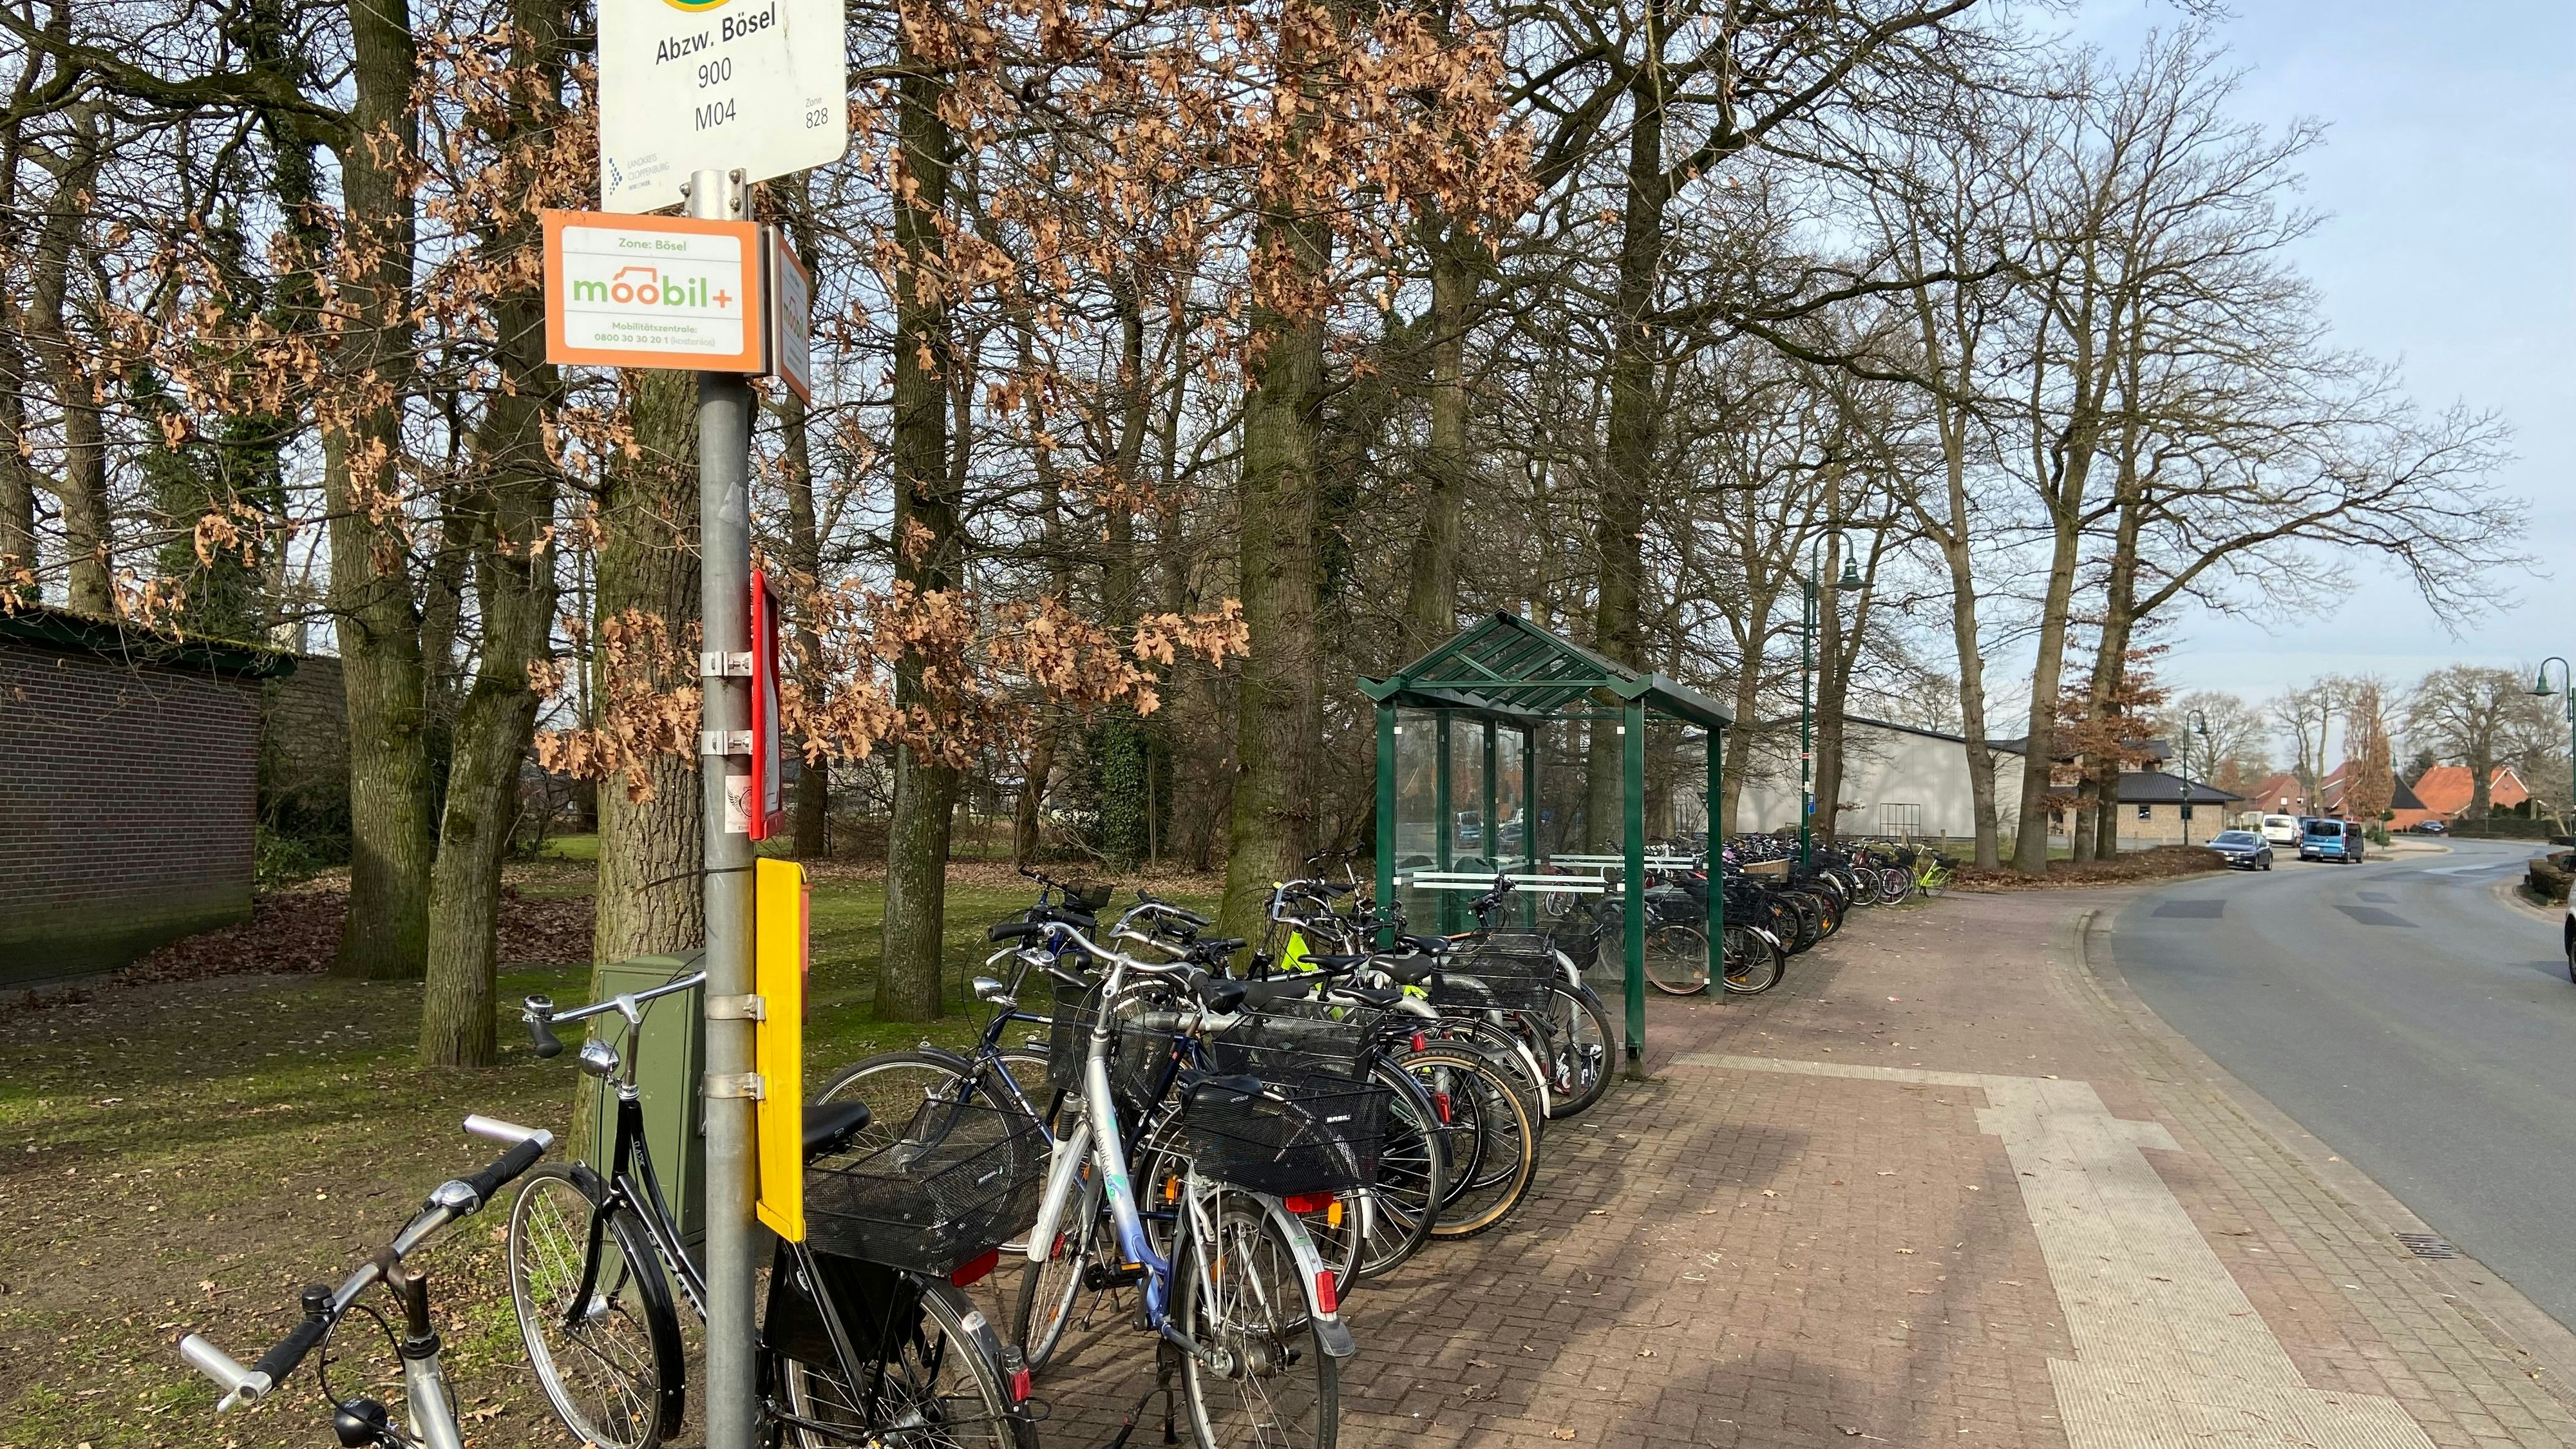 Die zahlreichen Fahrräder zeigen es: An der Bushaltestelle an der Böseler Straße ist morgens richtig viel los. Foto: Hoff